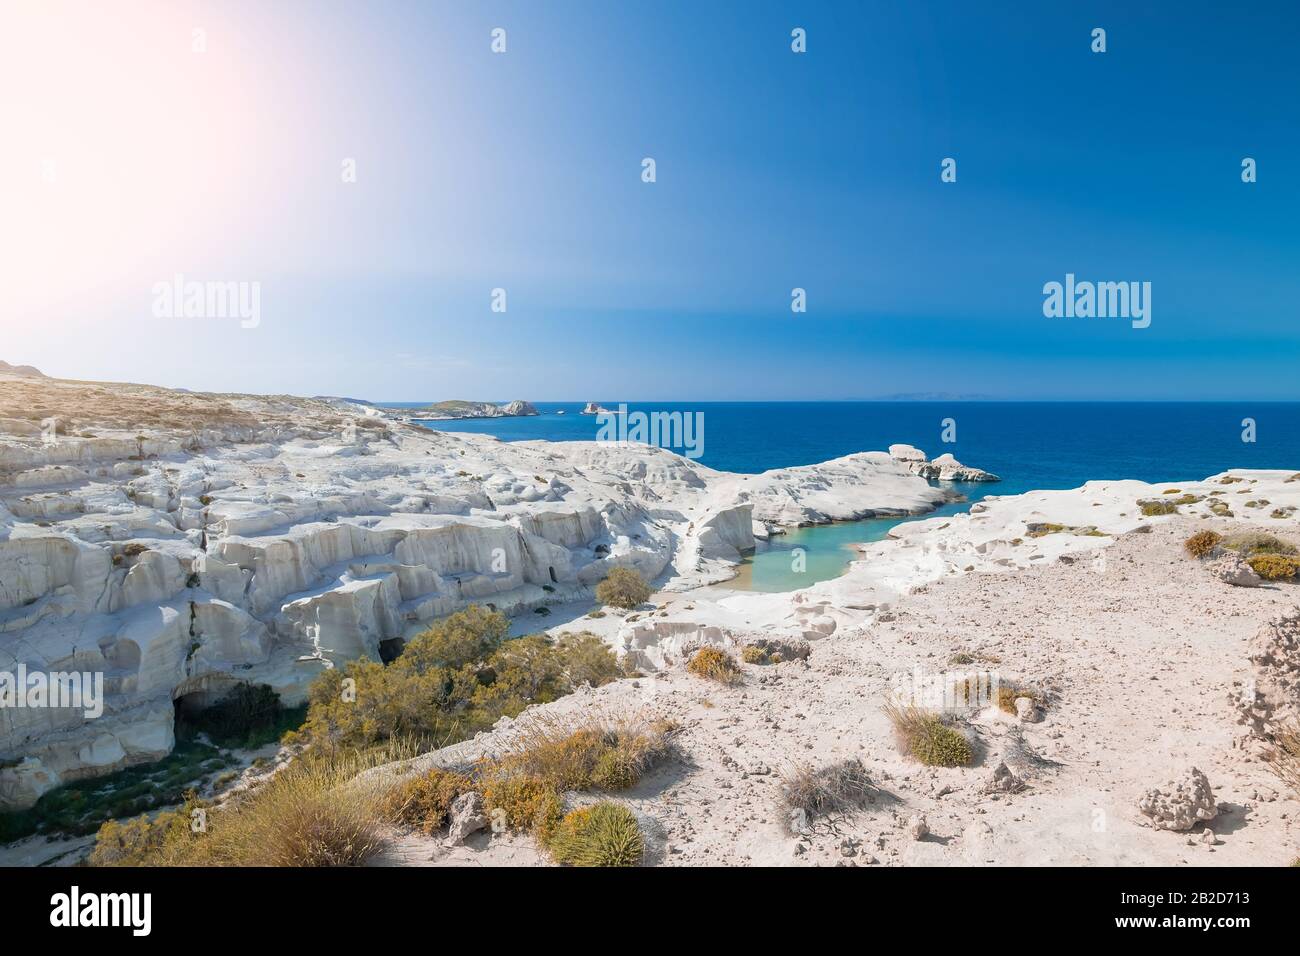 Fantastische Landschaft mit weißen vulkanischen Felsen am Sarakiniko Strand. Türkisfarbenes ägeisches Meer und blauer sonniger Himmel. Einzigartige mediterrane Natur der Insel Milos, Stockfoto